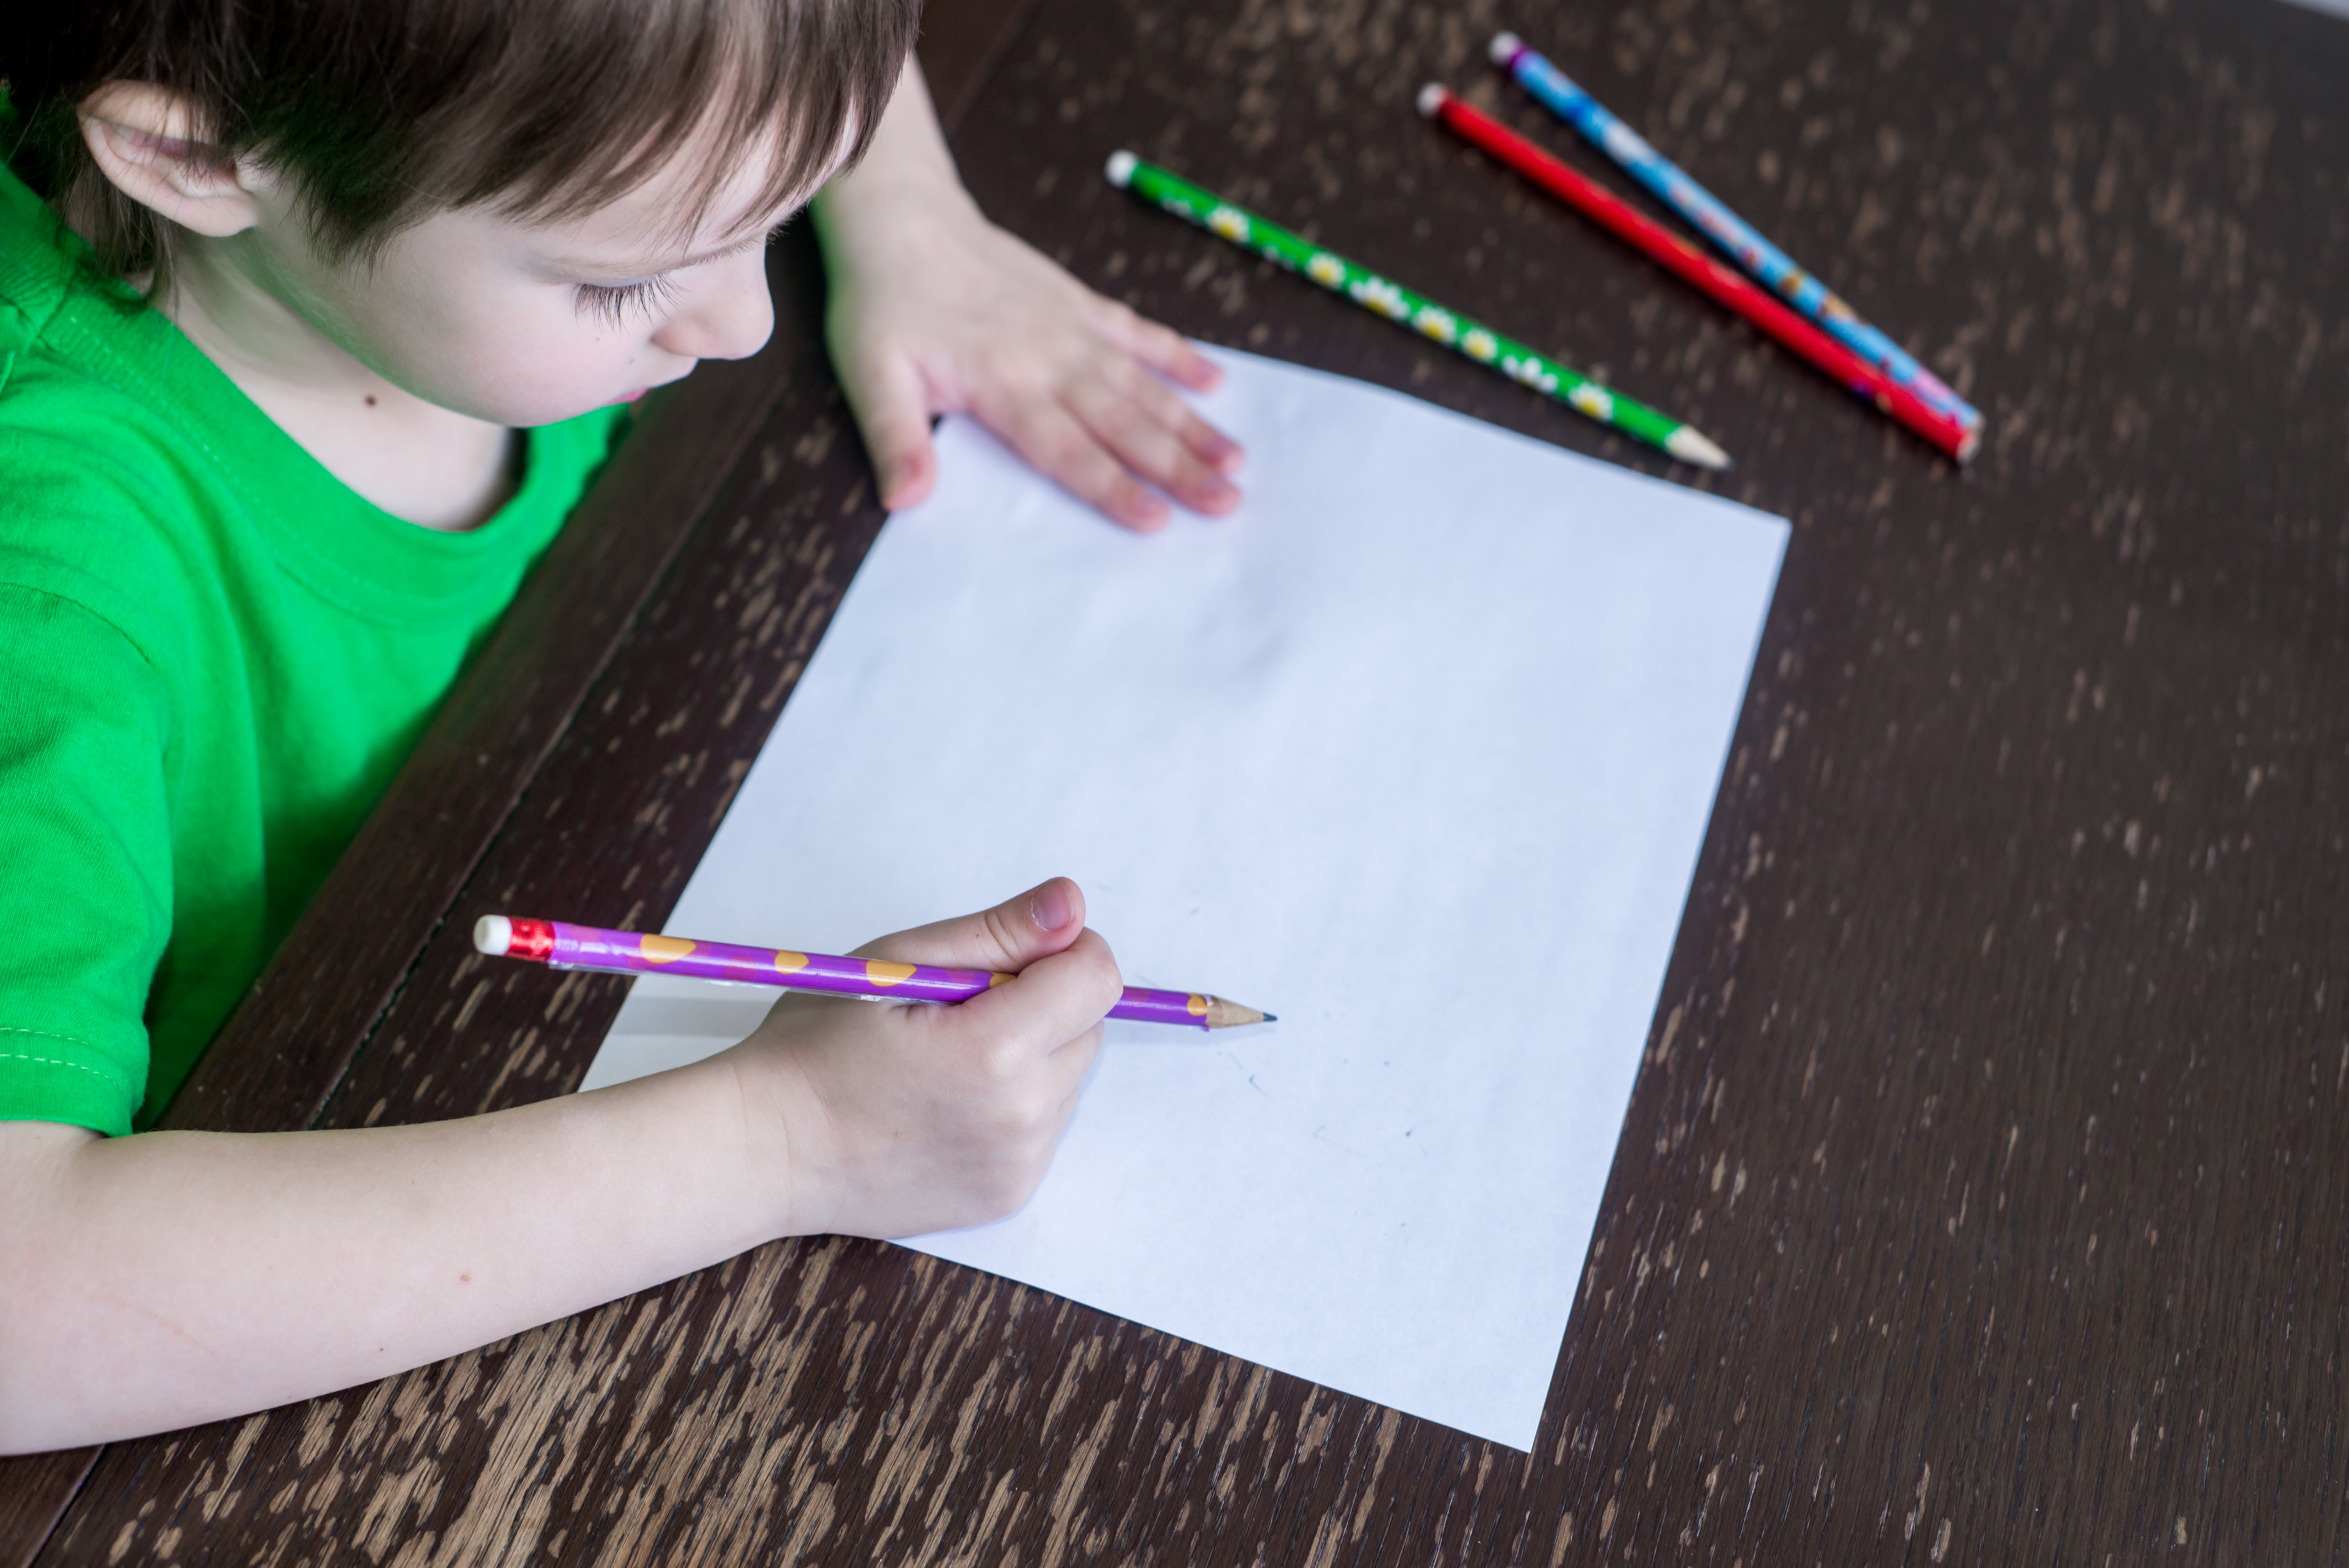 Foto de um menino branco em ensino domiciliar. Ele segura um lápis, diante de uma folha sulfite que está apoiada em uma mesa.